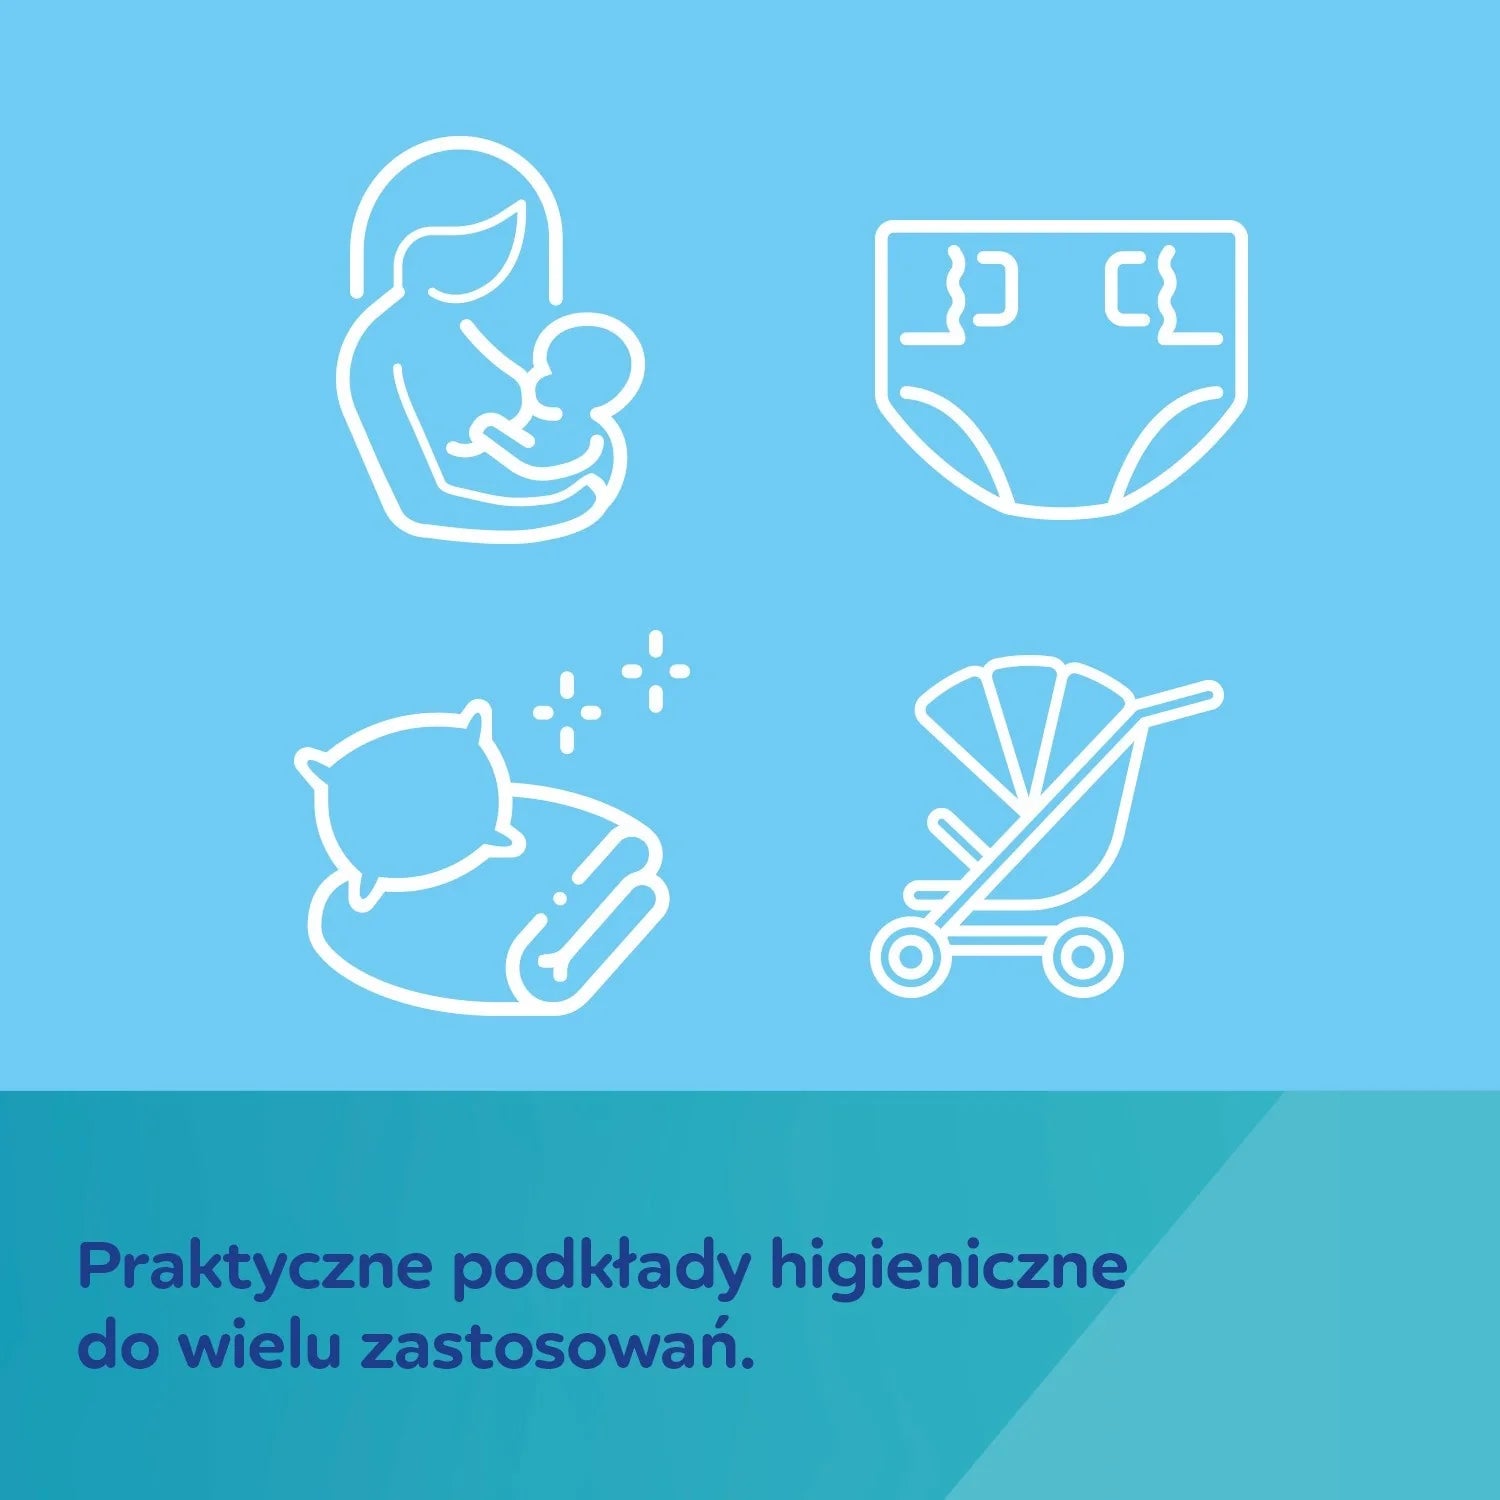 Bebelușii Canpol: plăcuțe sanitare autoadezive multifuncționale 90x60 cm 10 buc.